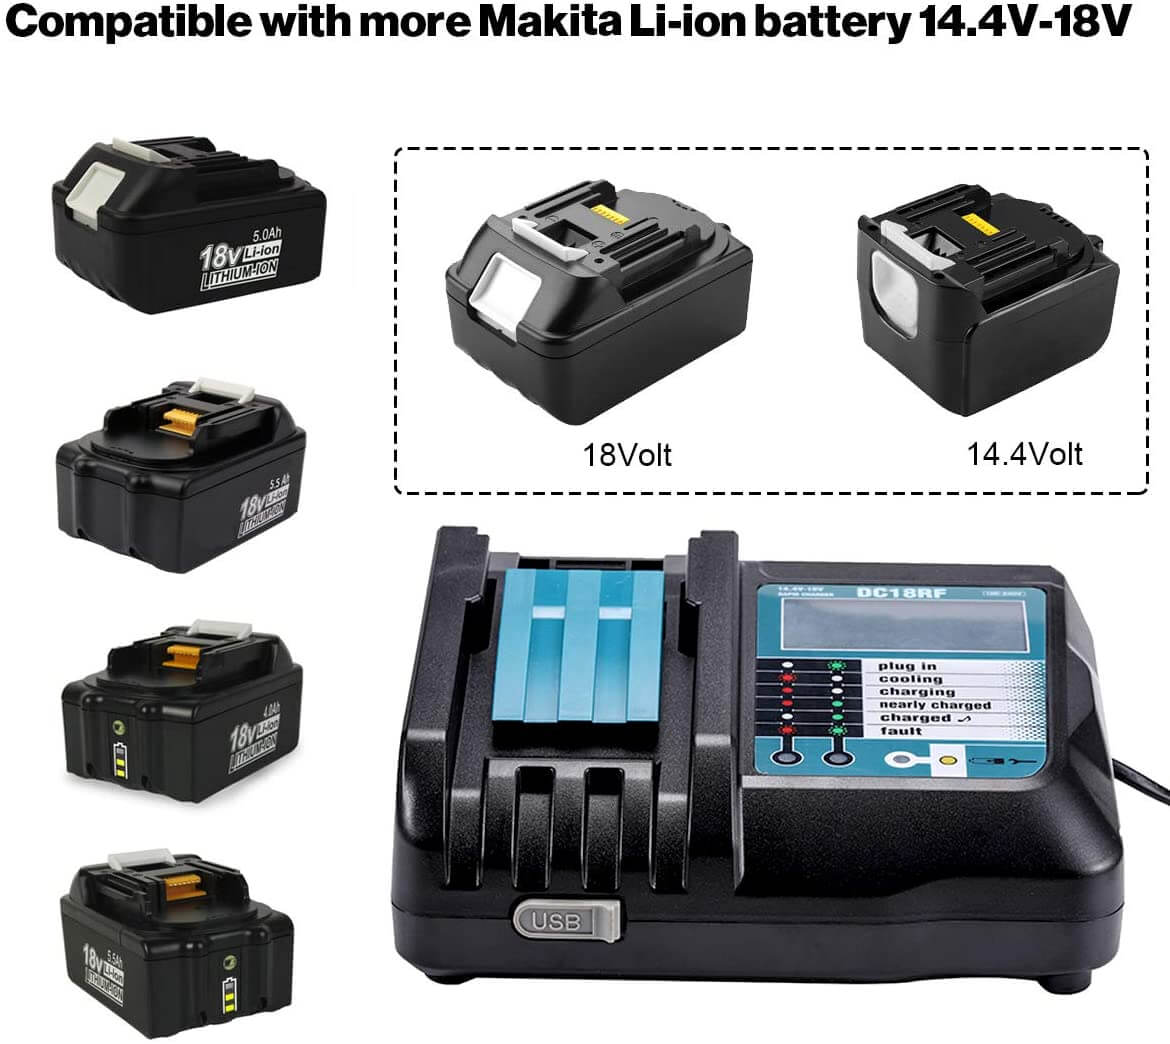 BL1850 + DC18RF 3.5A Chargeur de remplacement LI-ion pour Makita